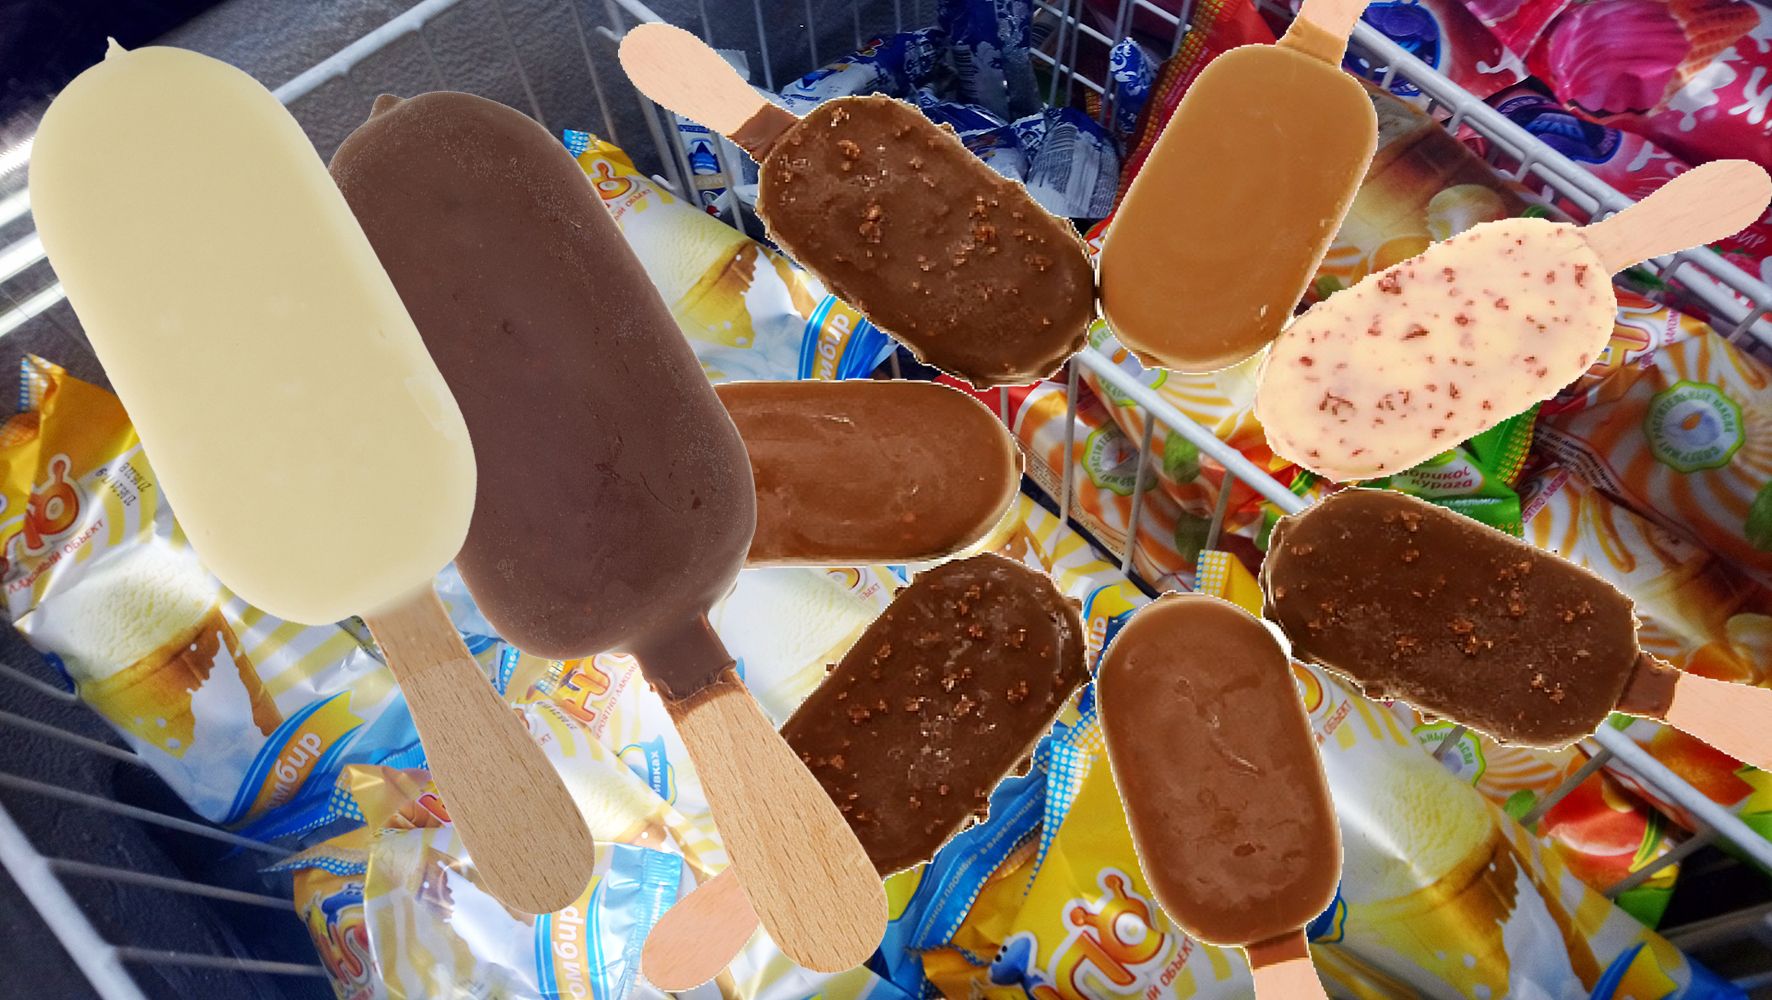 Для детей мороженое - всегда сладость и радость!